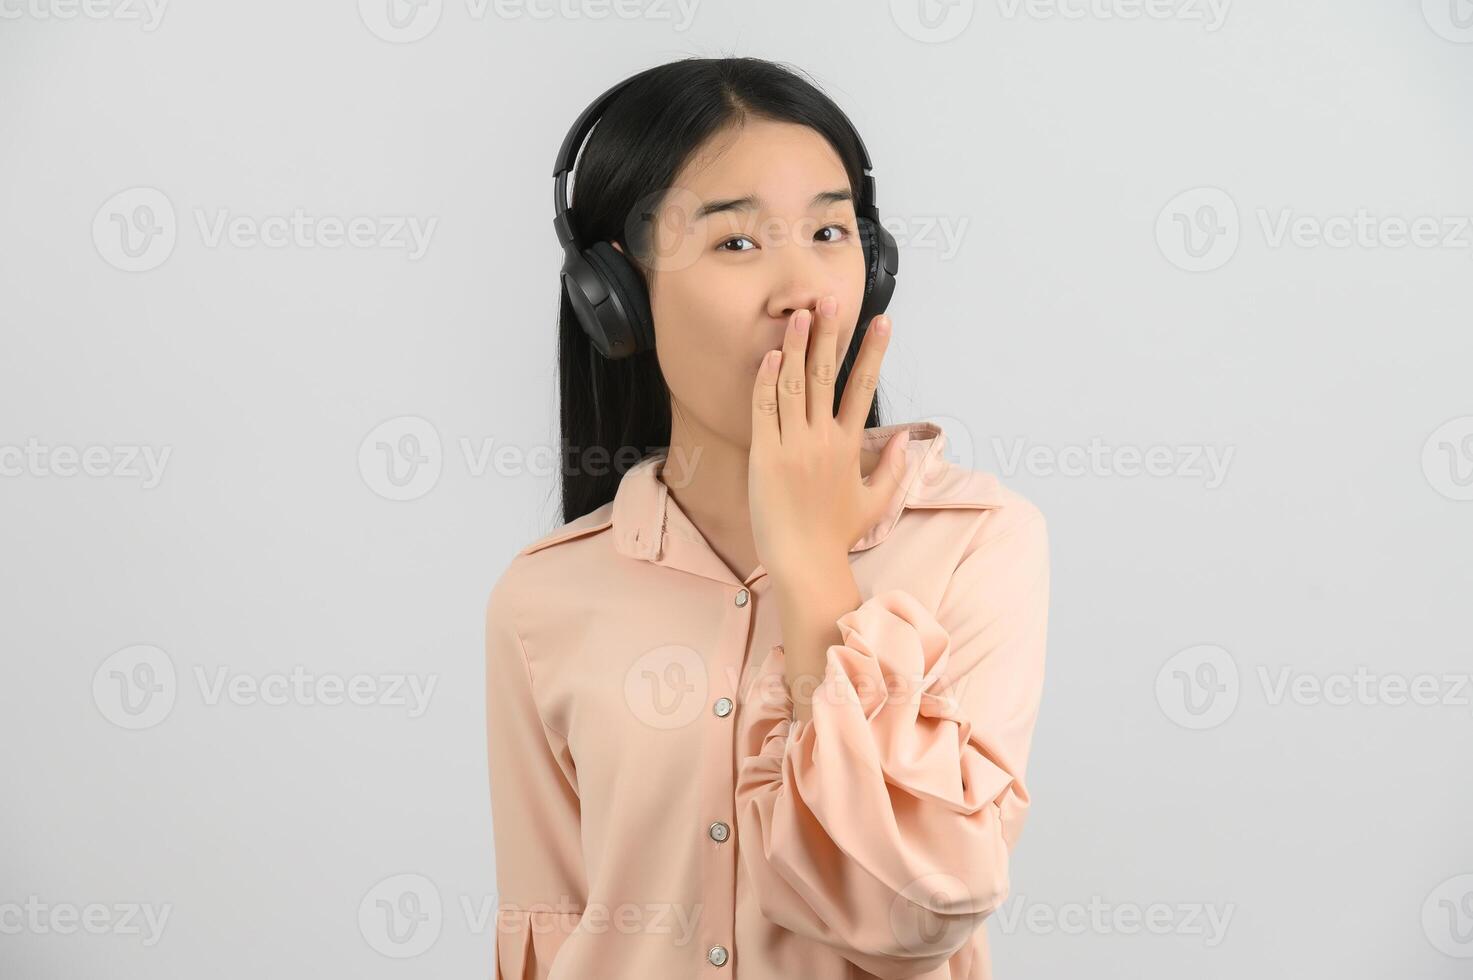 retrato de jovem mulher asiática gostando de ouvir música com fones de ouvido grandes em estúdio isolado no fundo branco foto